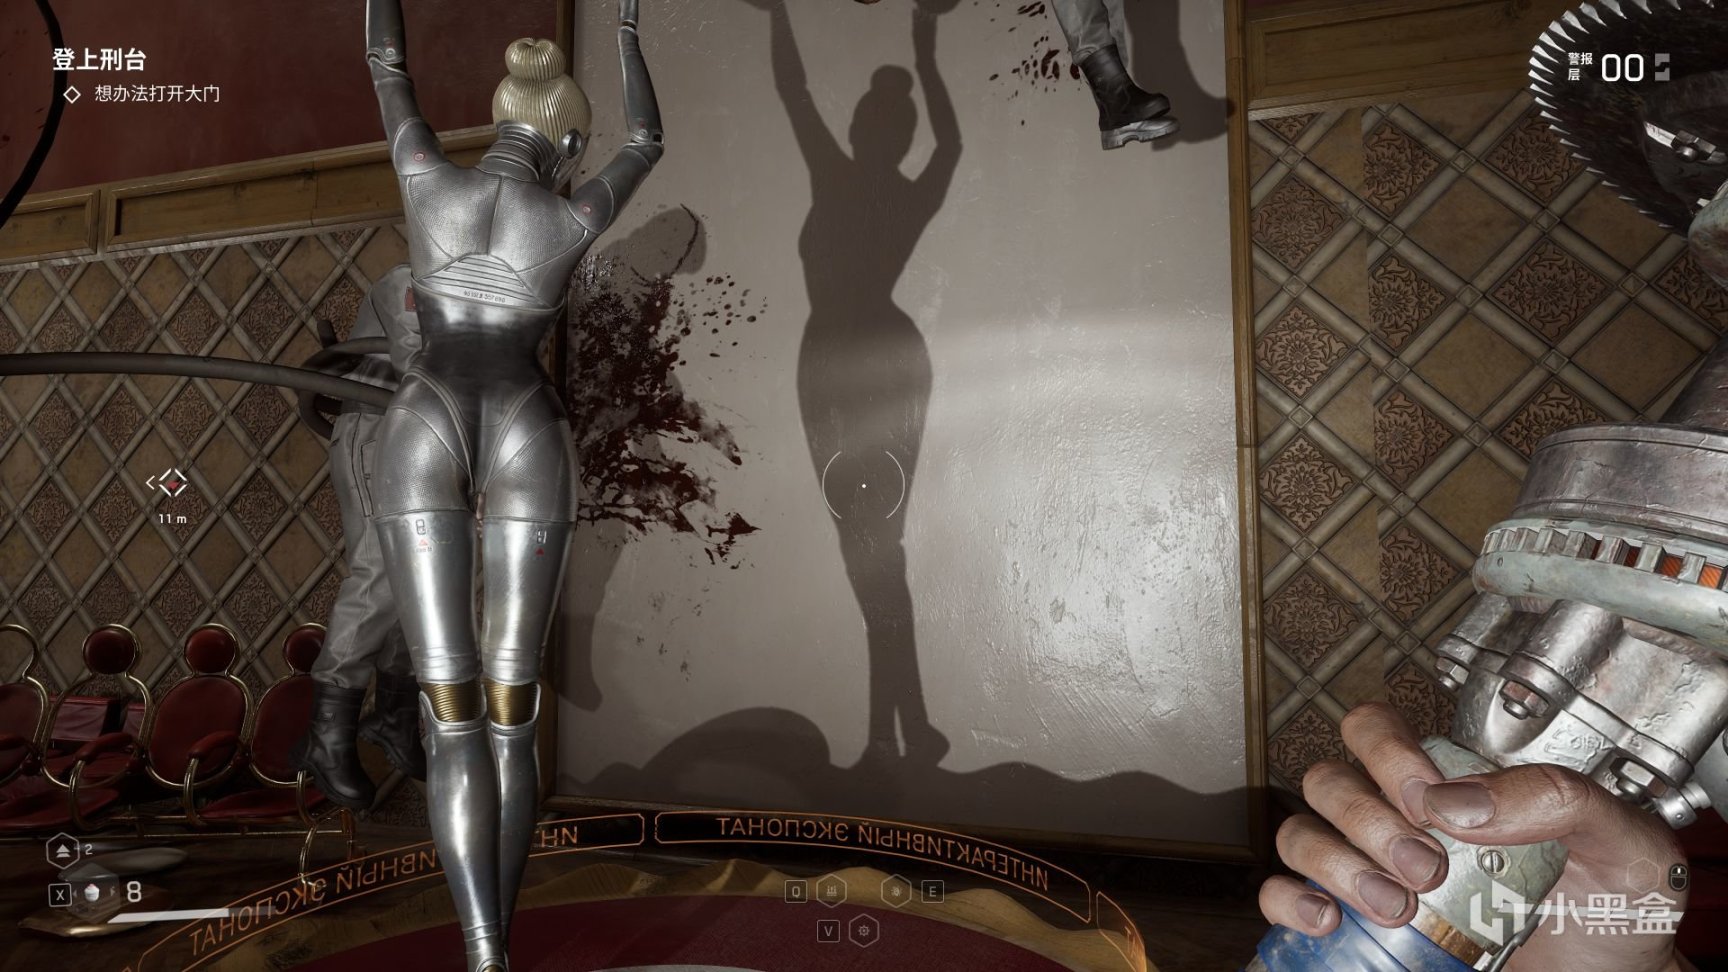 【PC游戏】诺拉小姐要生气了 欣赏《原子之心》机器芭蕾之美-第11张